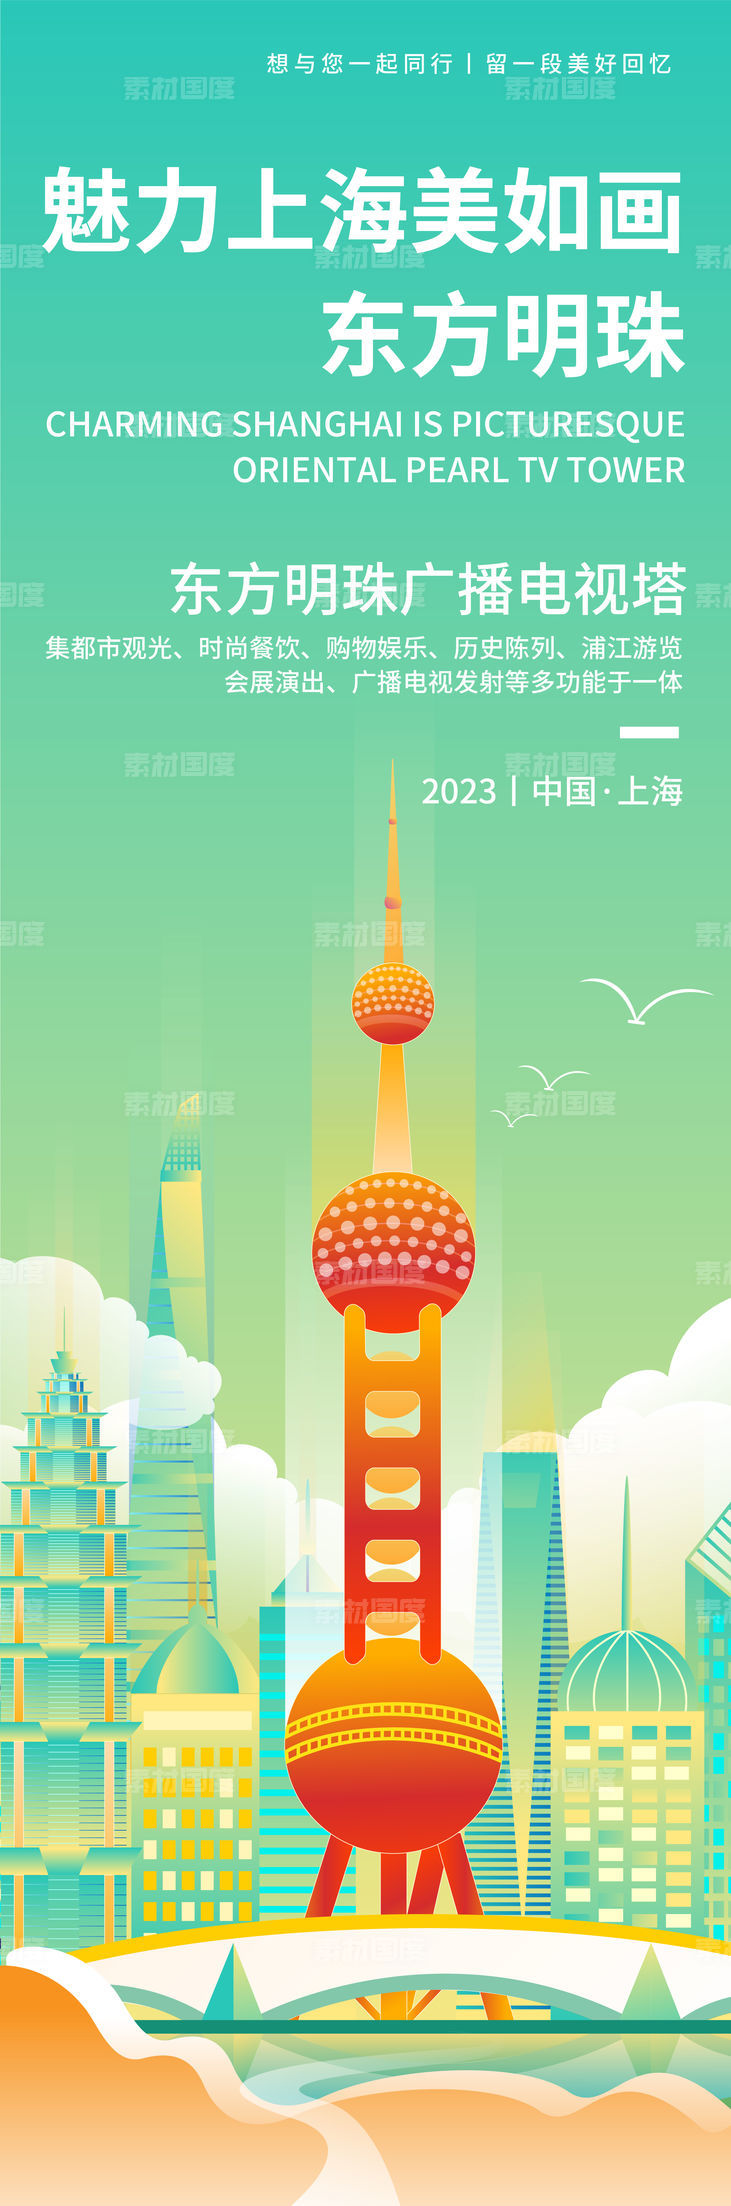 魅力上海东方明珠旅游海报